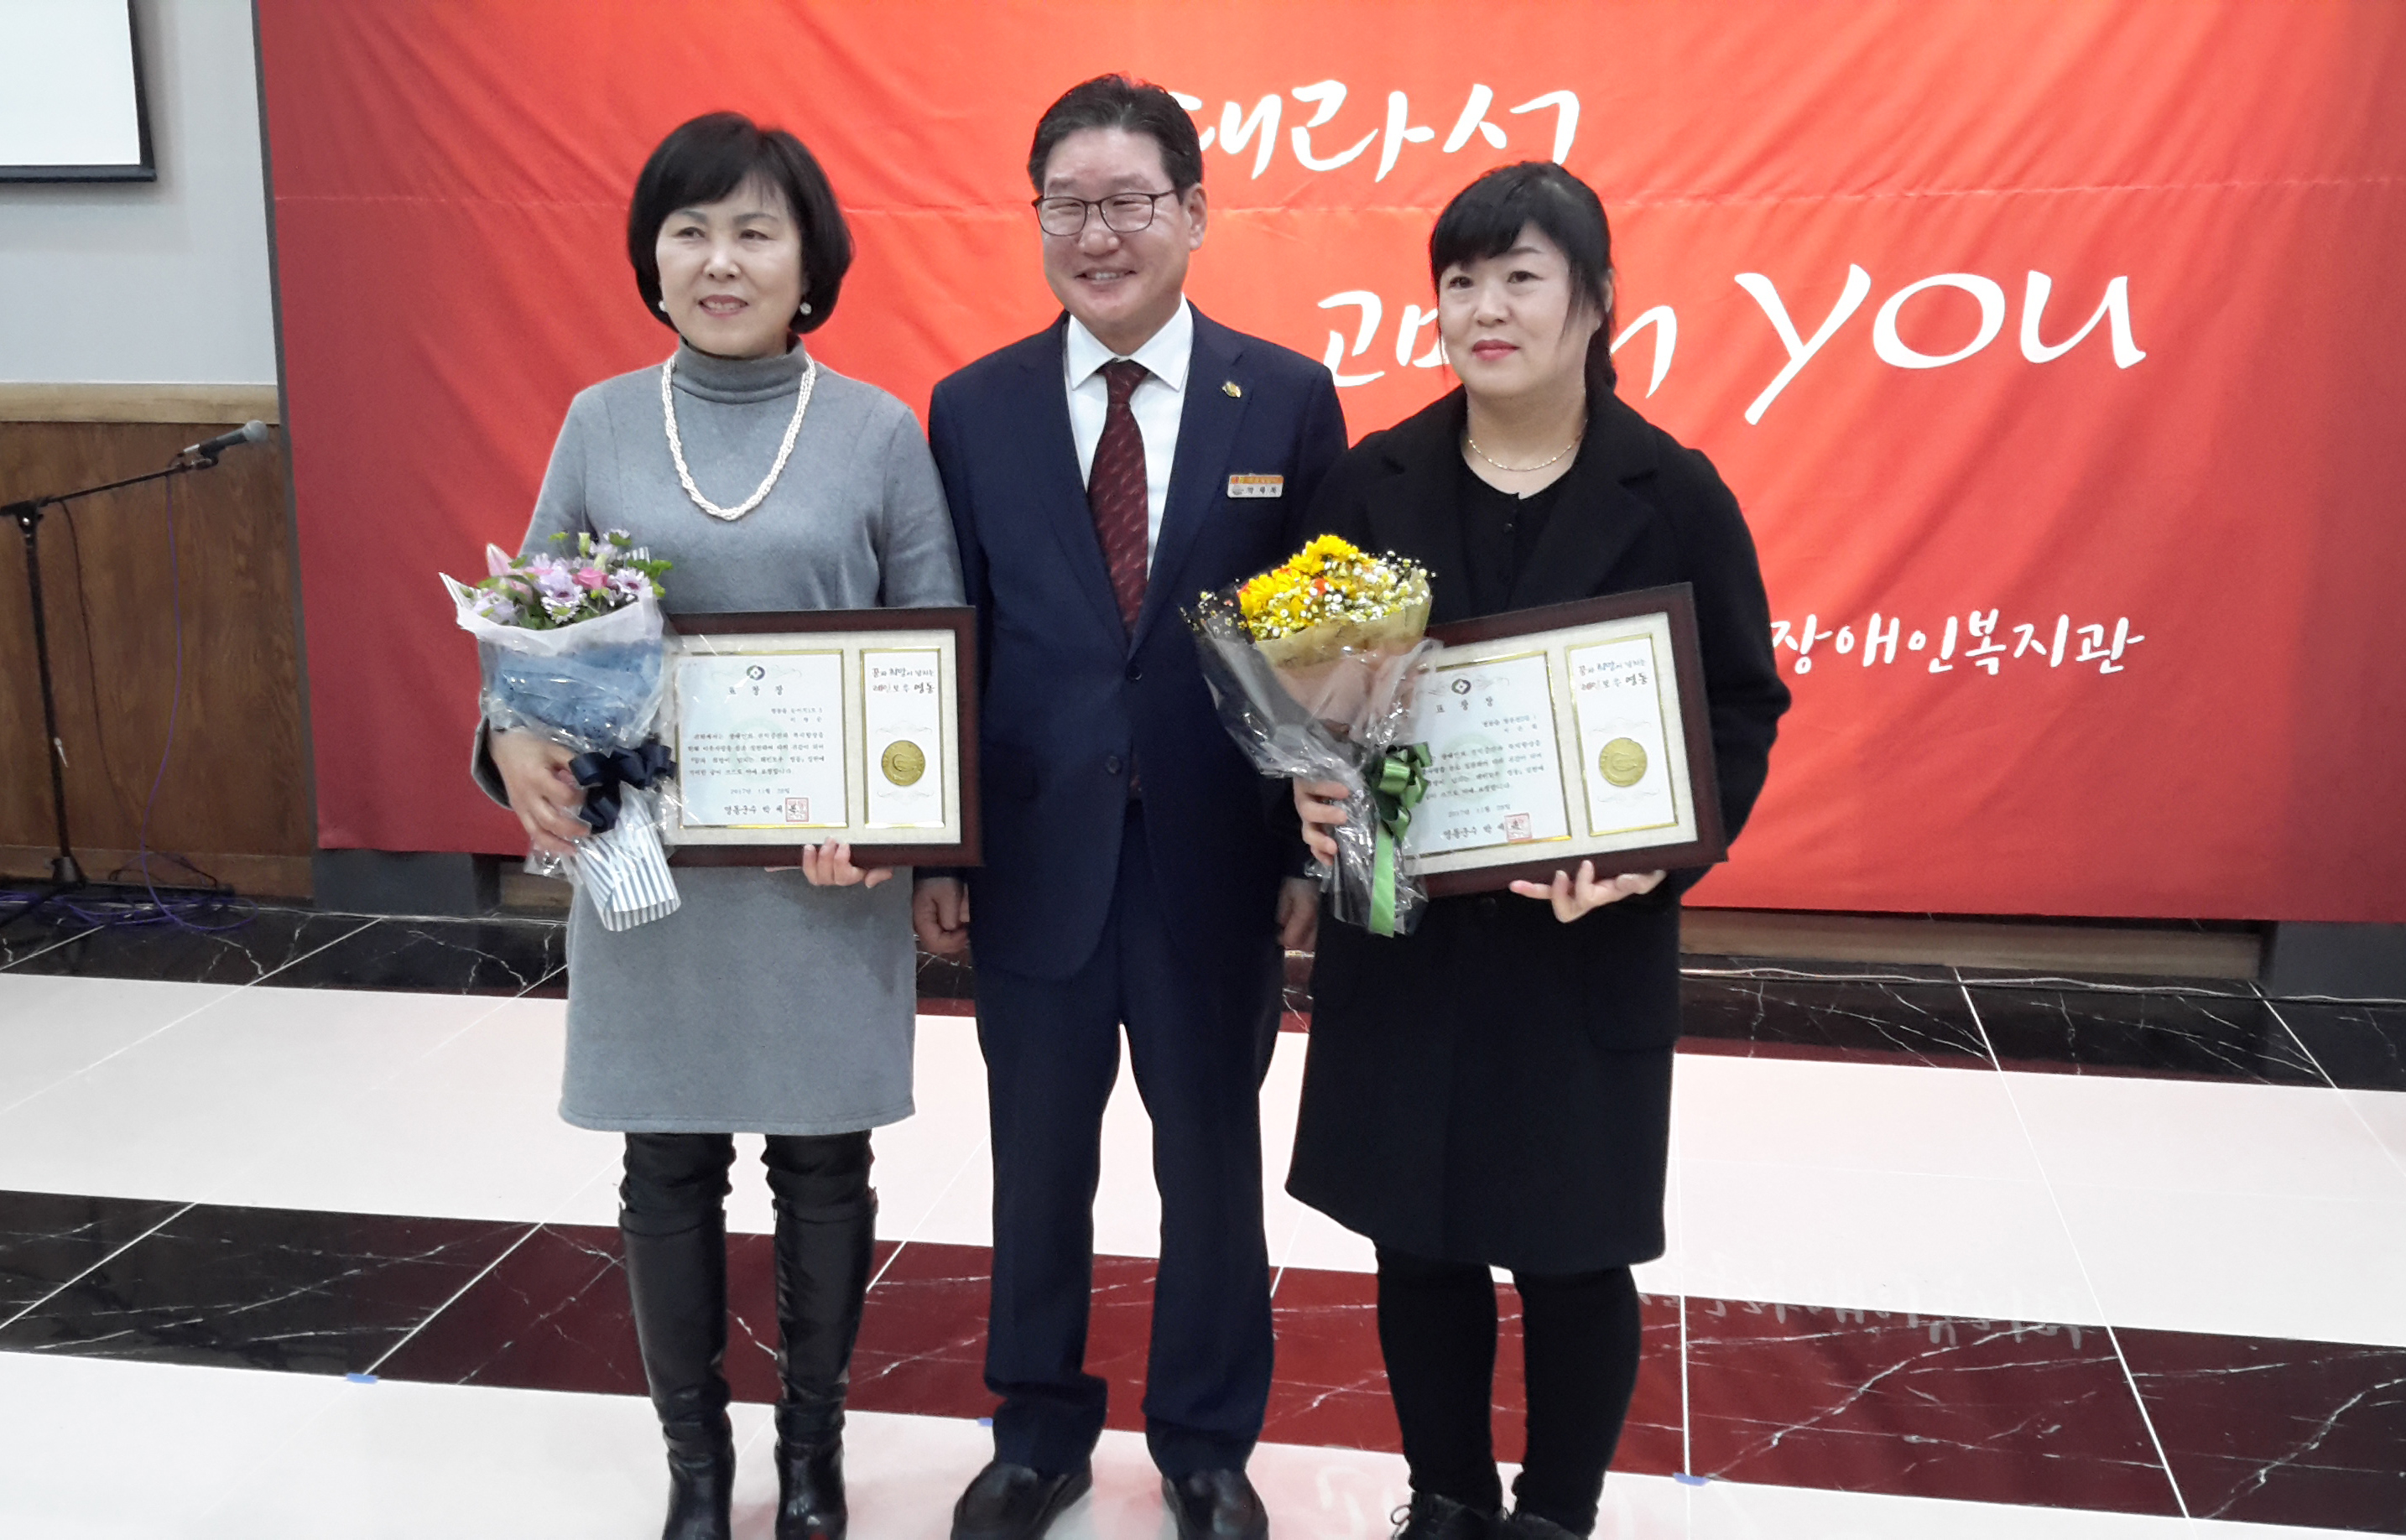 자원봉사, 후원자 감사 행사에서 상을 받은 수상자들의 모습